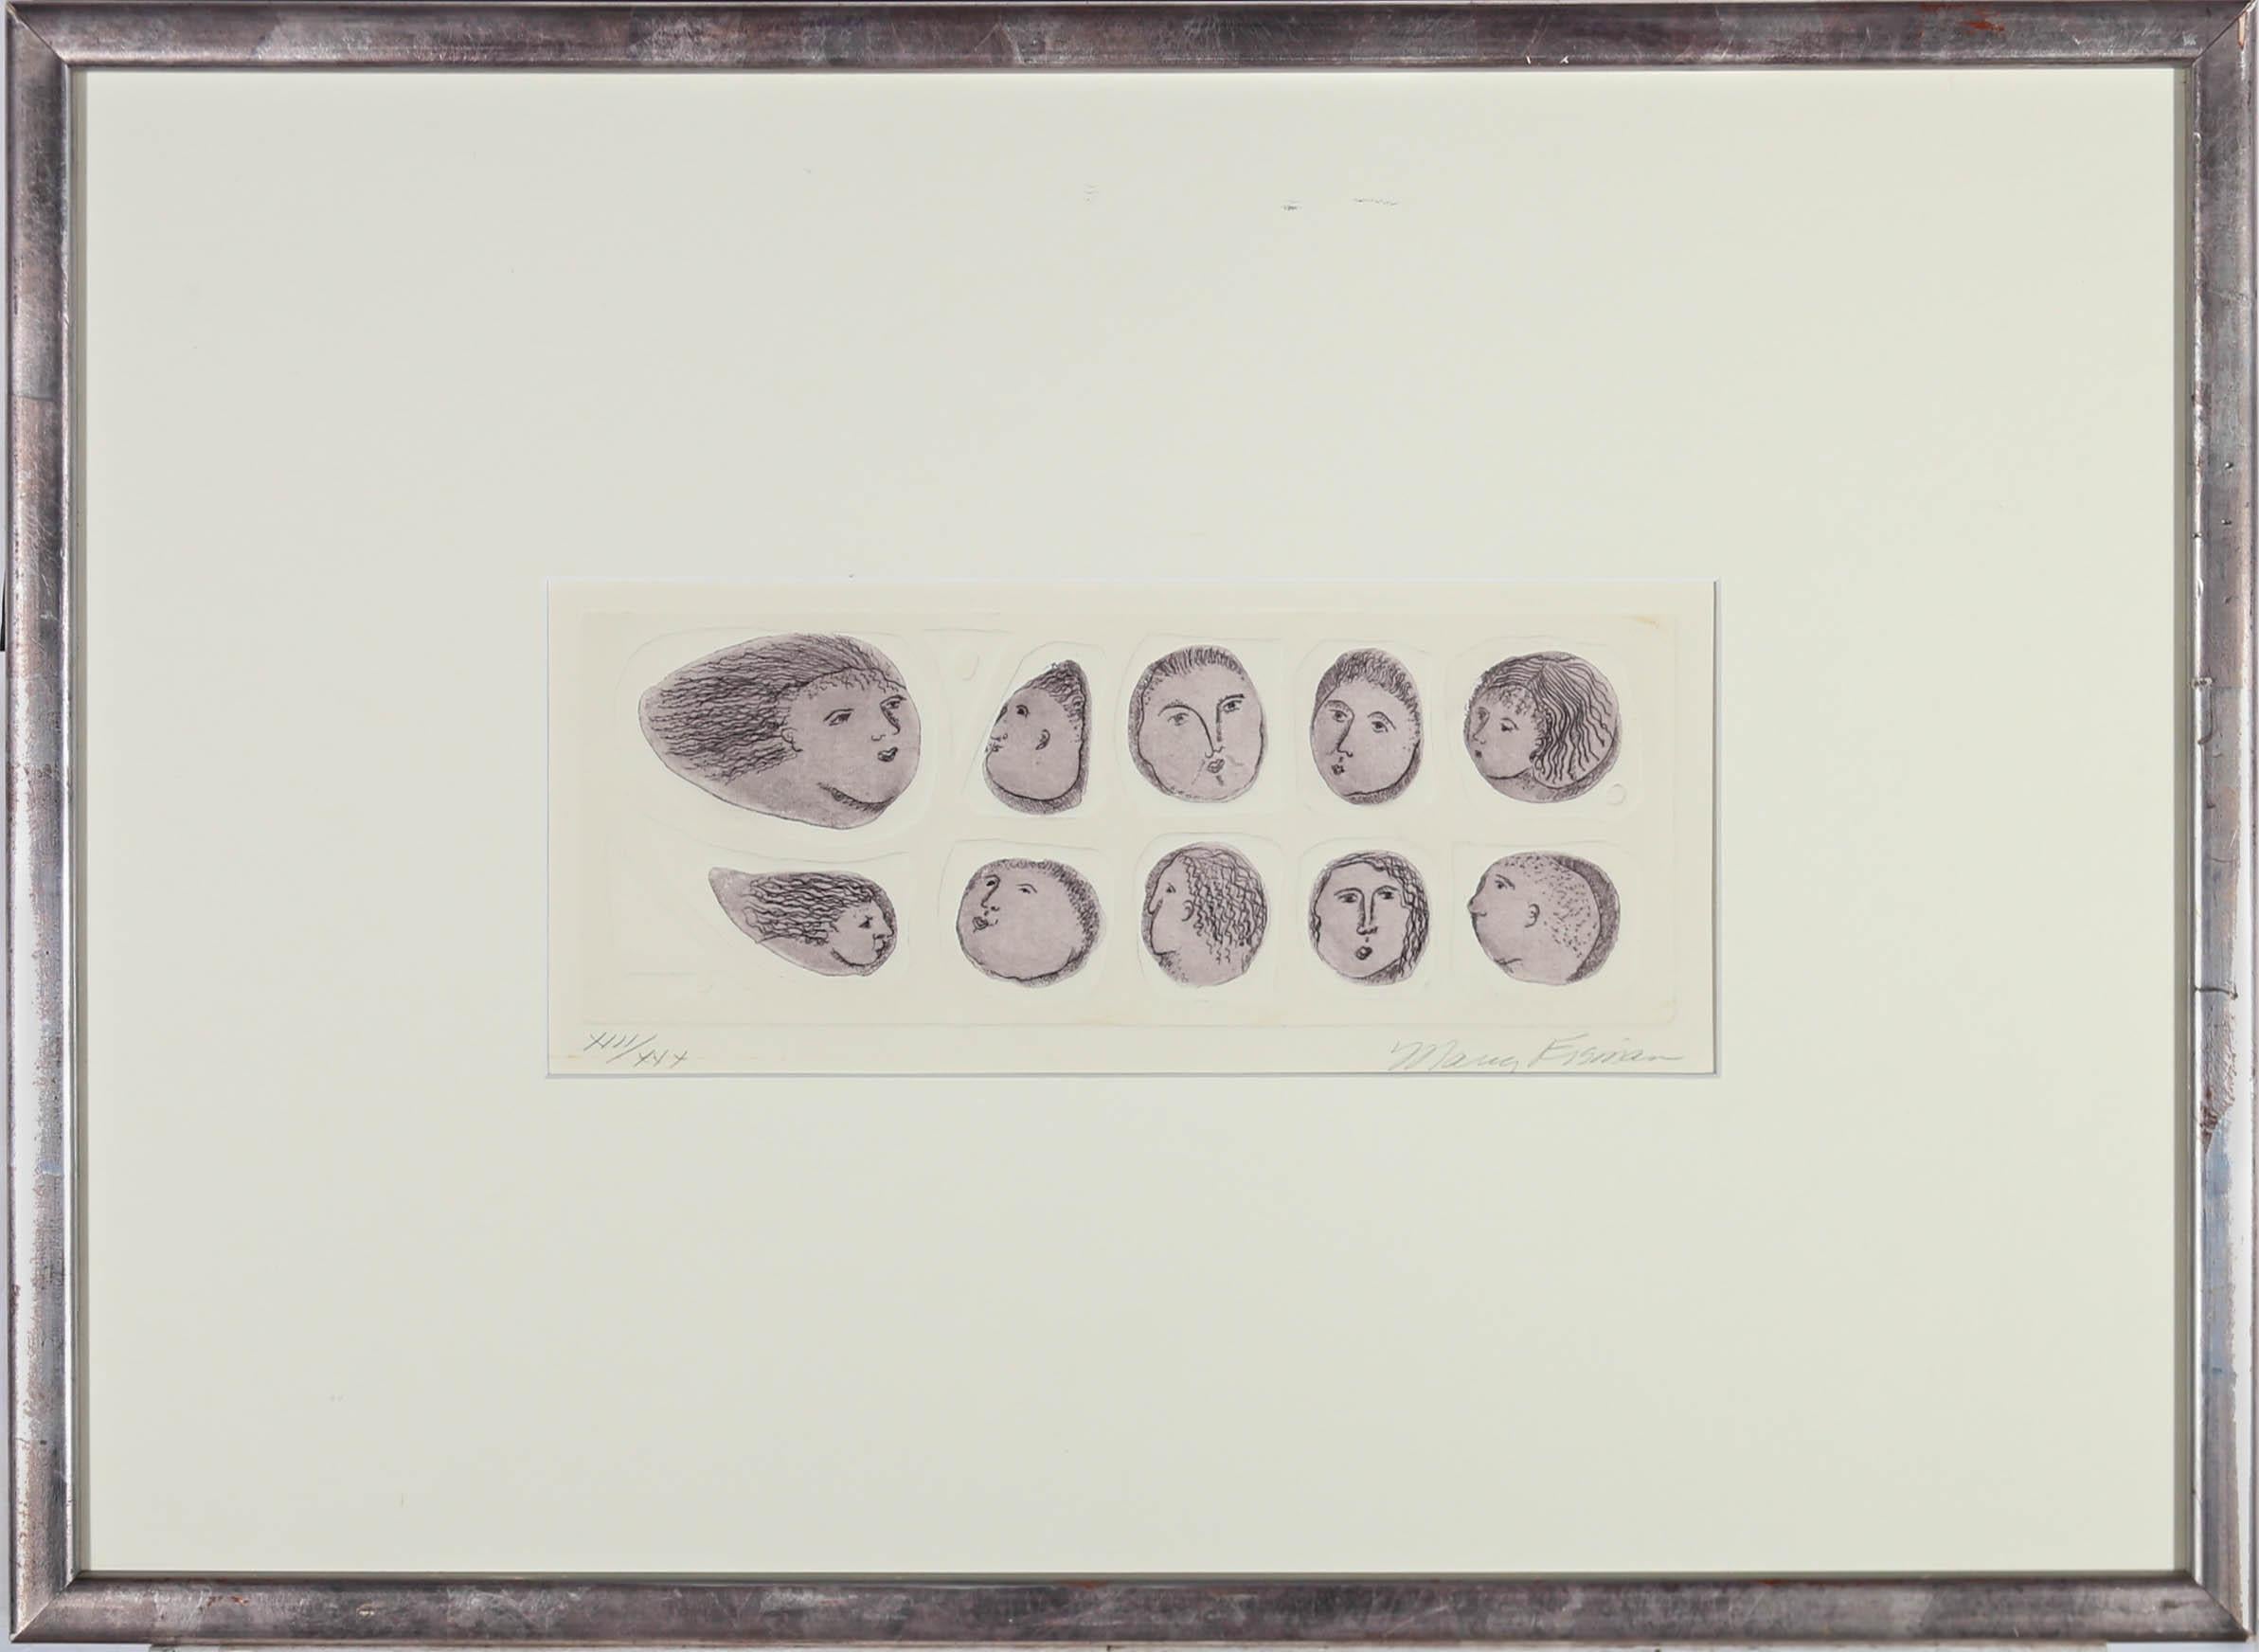 Eine charmante Darstellung von geätzten Gesichtern mit verschiedenen Ausdrücken. Signiert unten rechts. Präsentiert in einem silbernen Rahmen mit Goldeffekt. Auf dem Papier.
